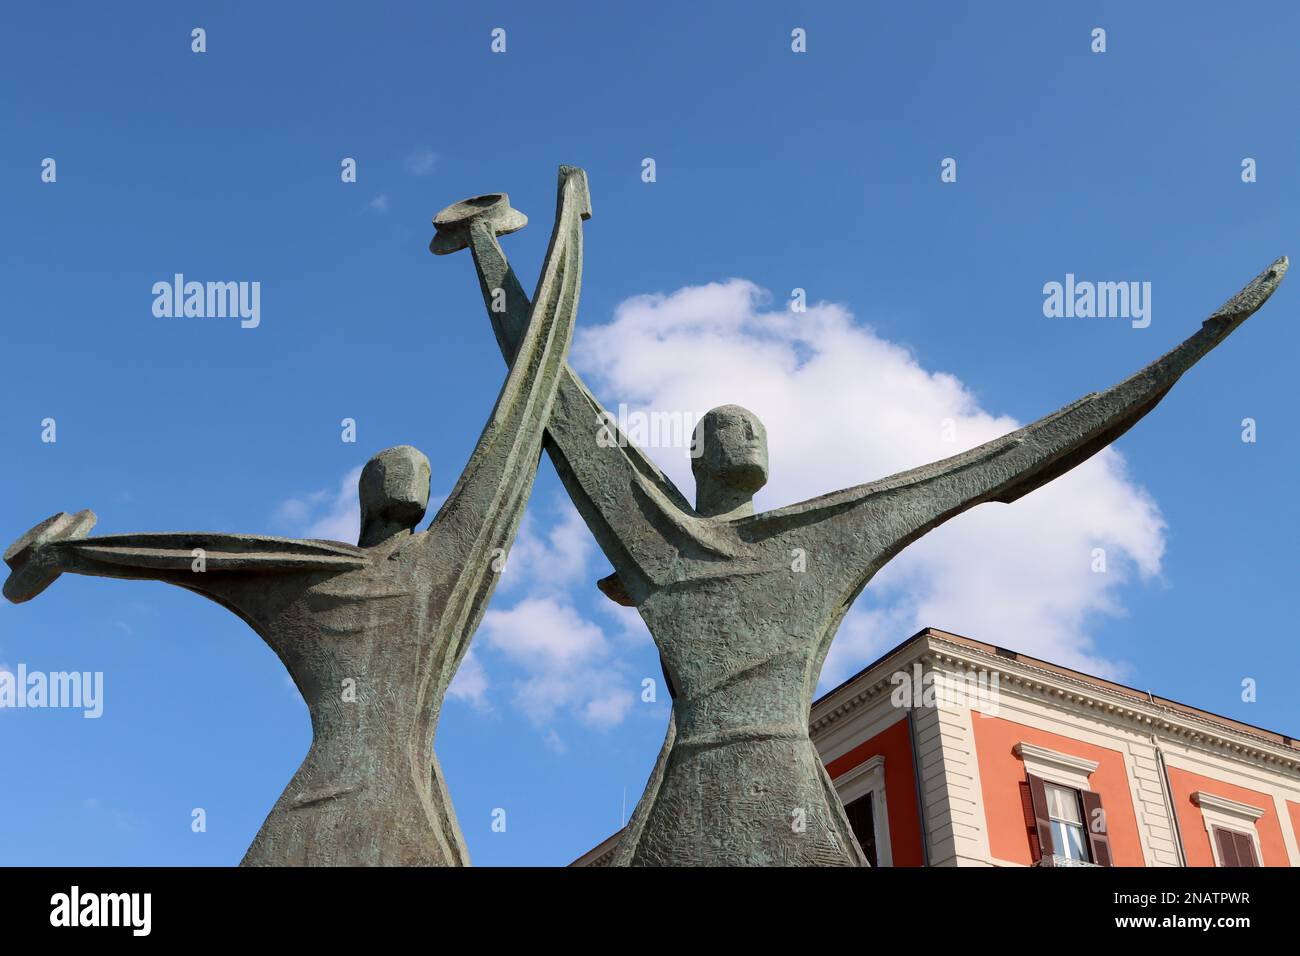 Monumento al velista di Taranto. Dedicato ai marinai della Marina militare Italiana. La scultura è alta circa sette metri. Puglia, Italia Foto Stock